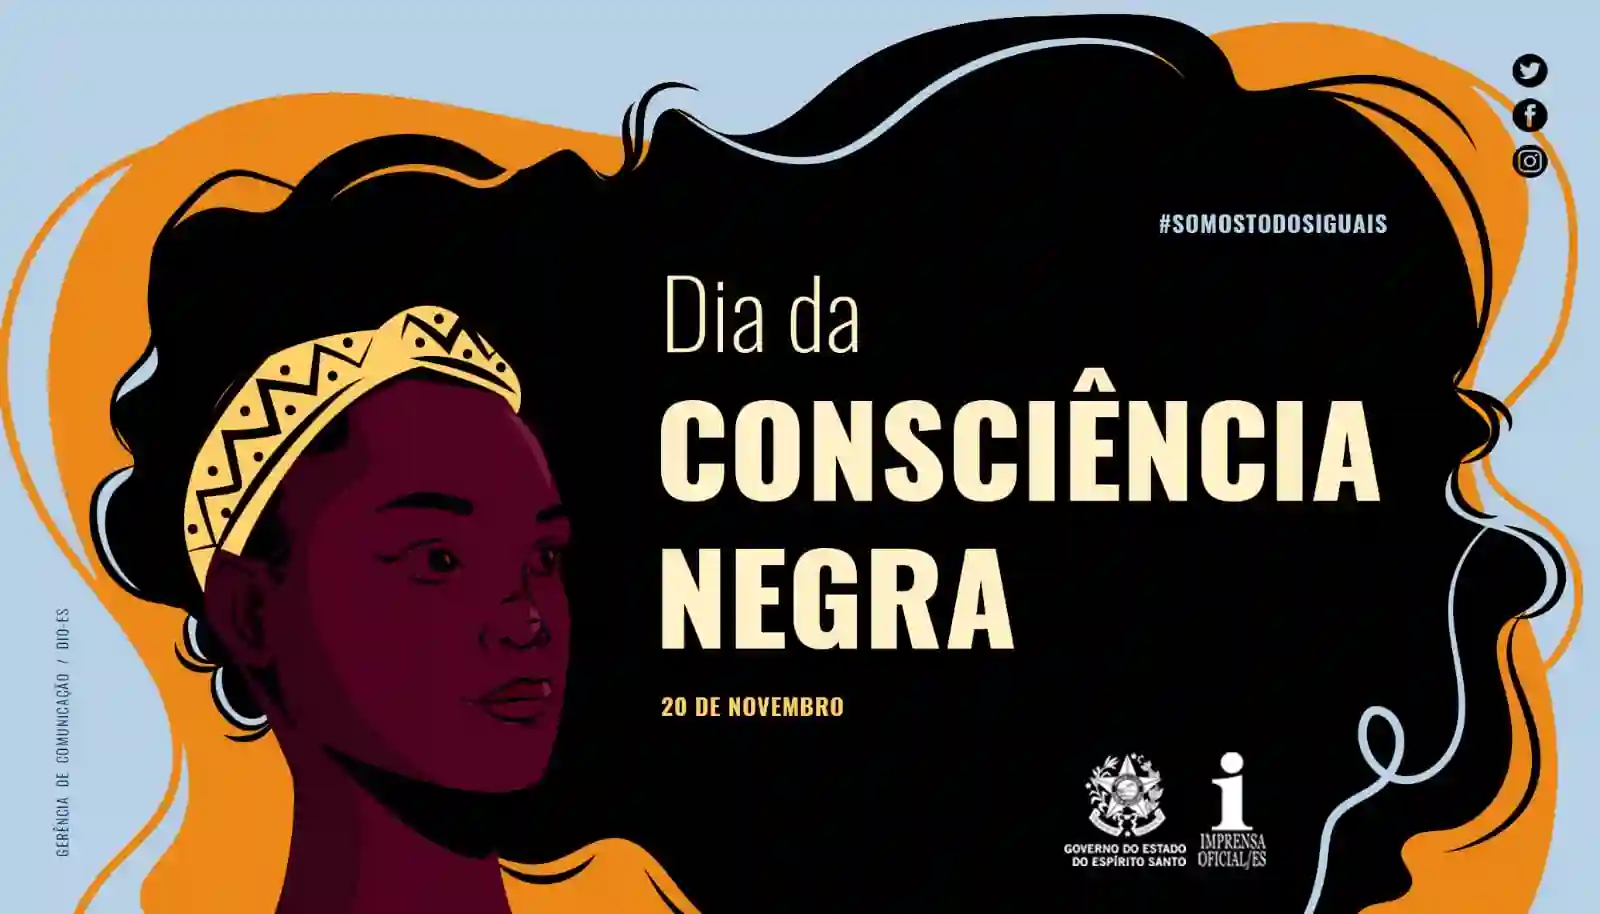 20 de novembro Dia da Consciência Negra